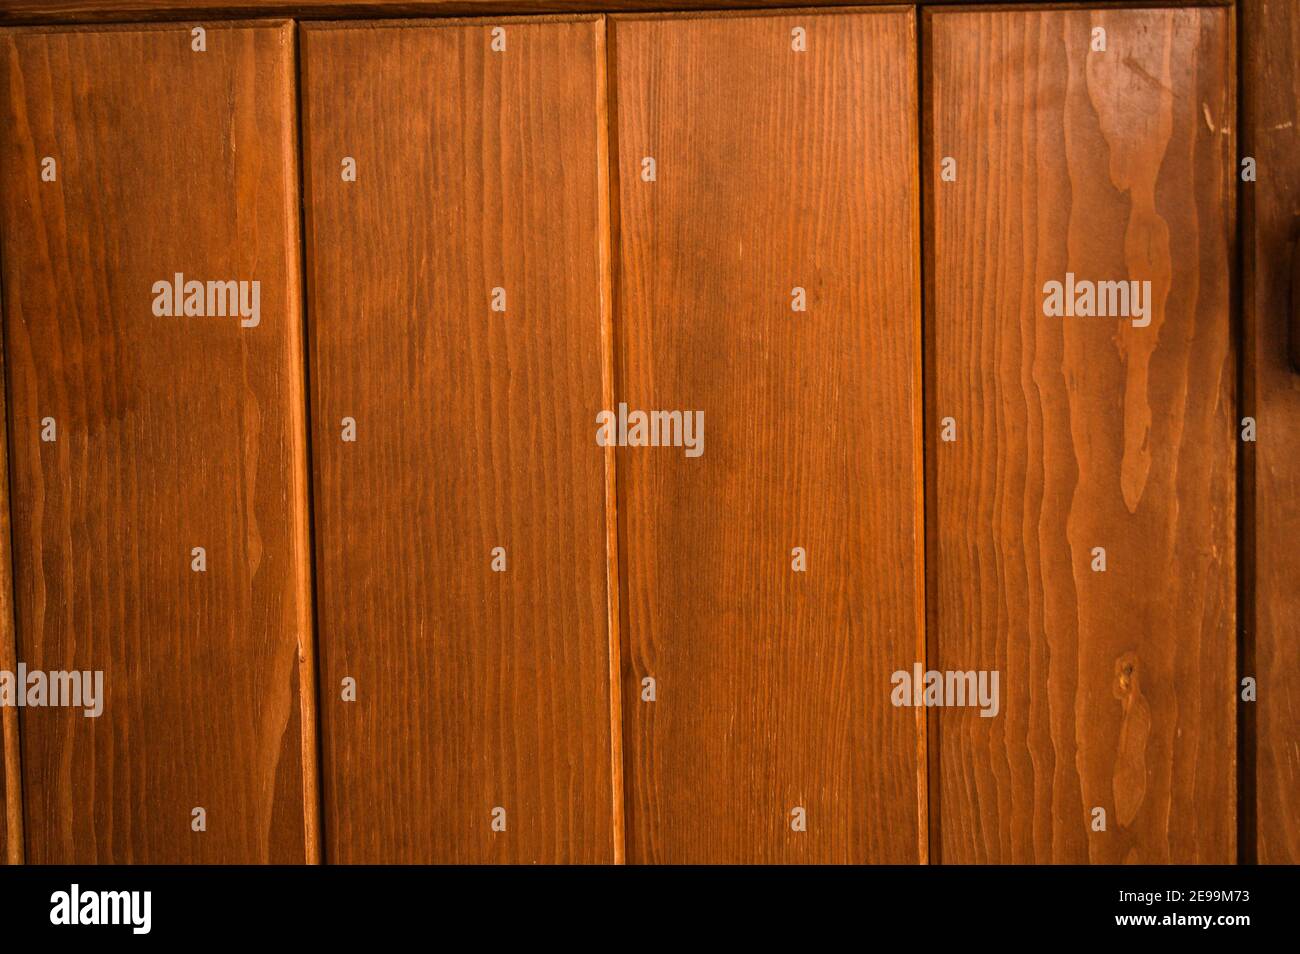 Gleichmäßig verteilte, satte, braune Paneele an einer Holztür füllen den Rahmen des Fotos; für den Einsatz als Hintergrund oder Präsentationsfolie. Stockfoto